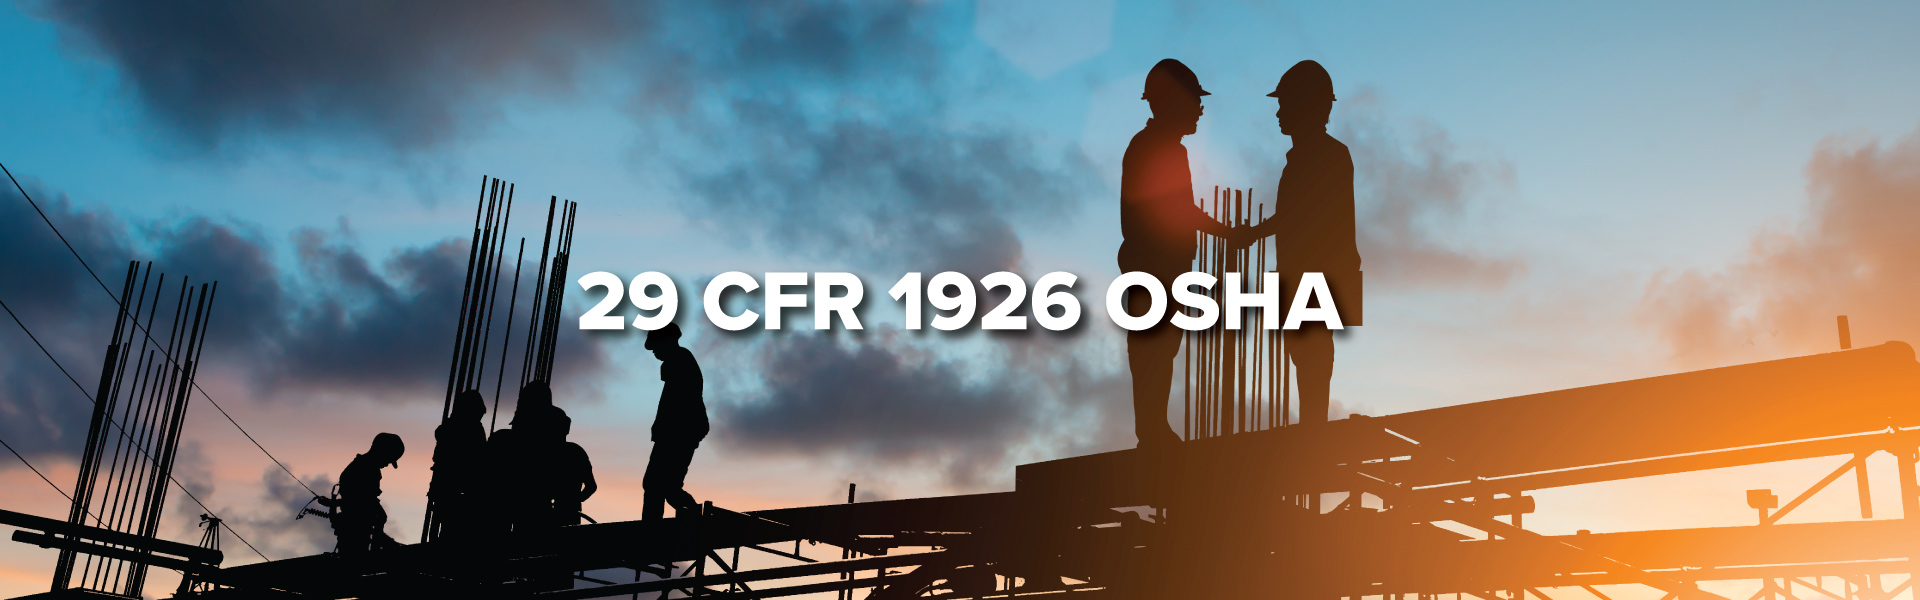 29-CFR-1926-OSHA_1920x600